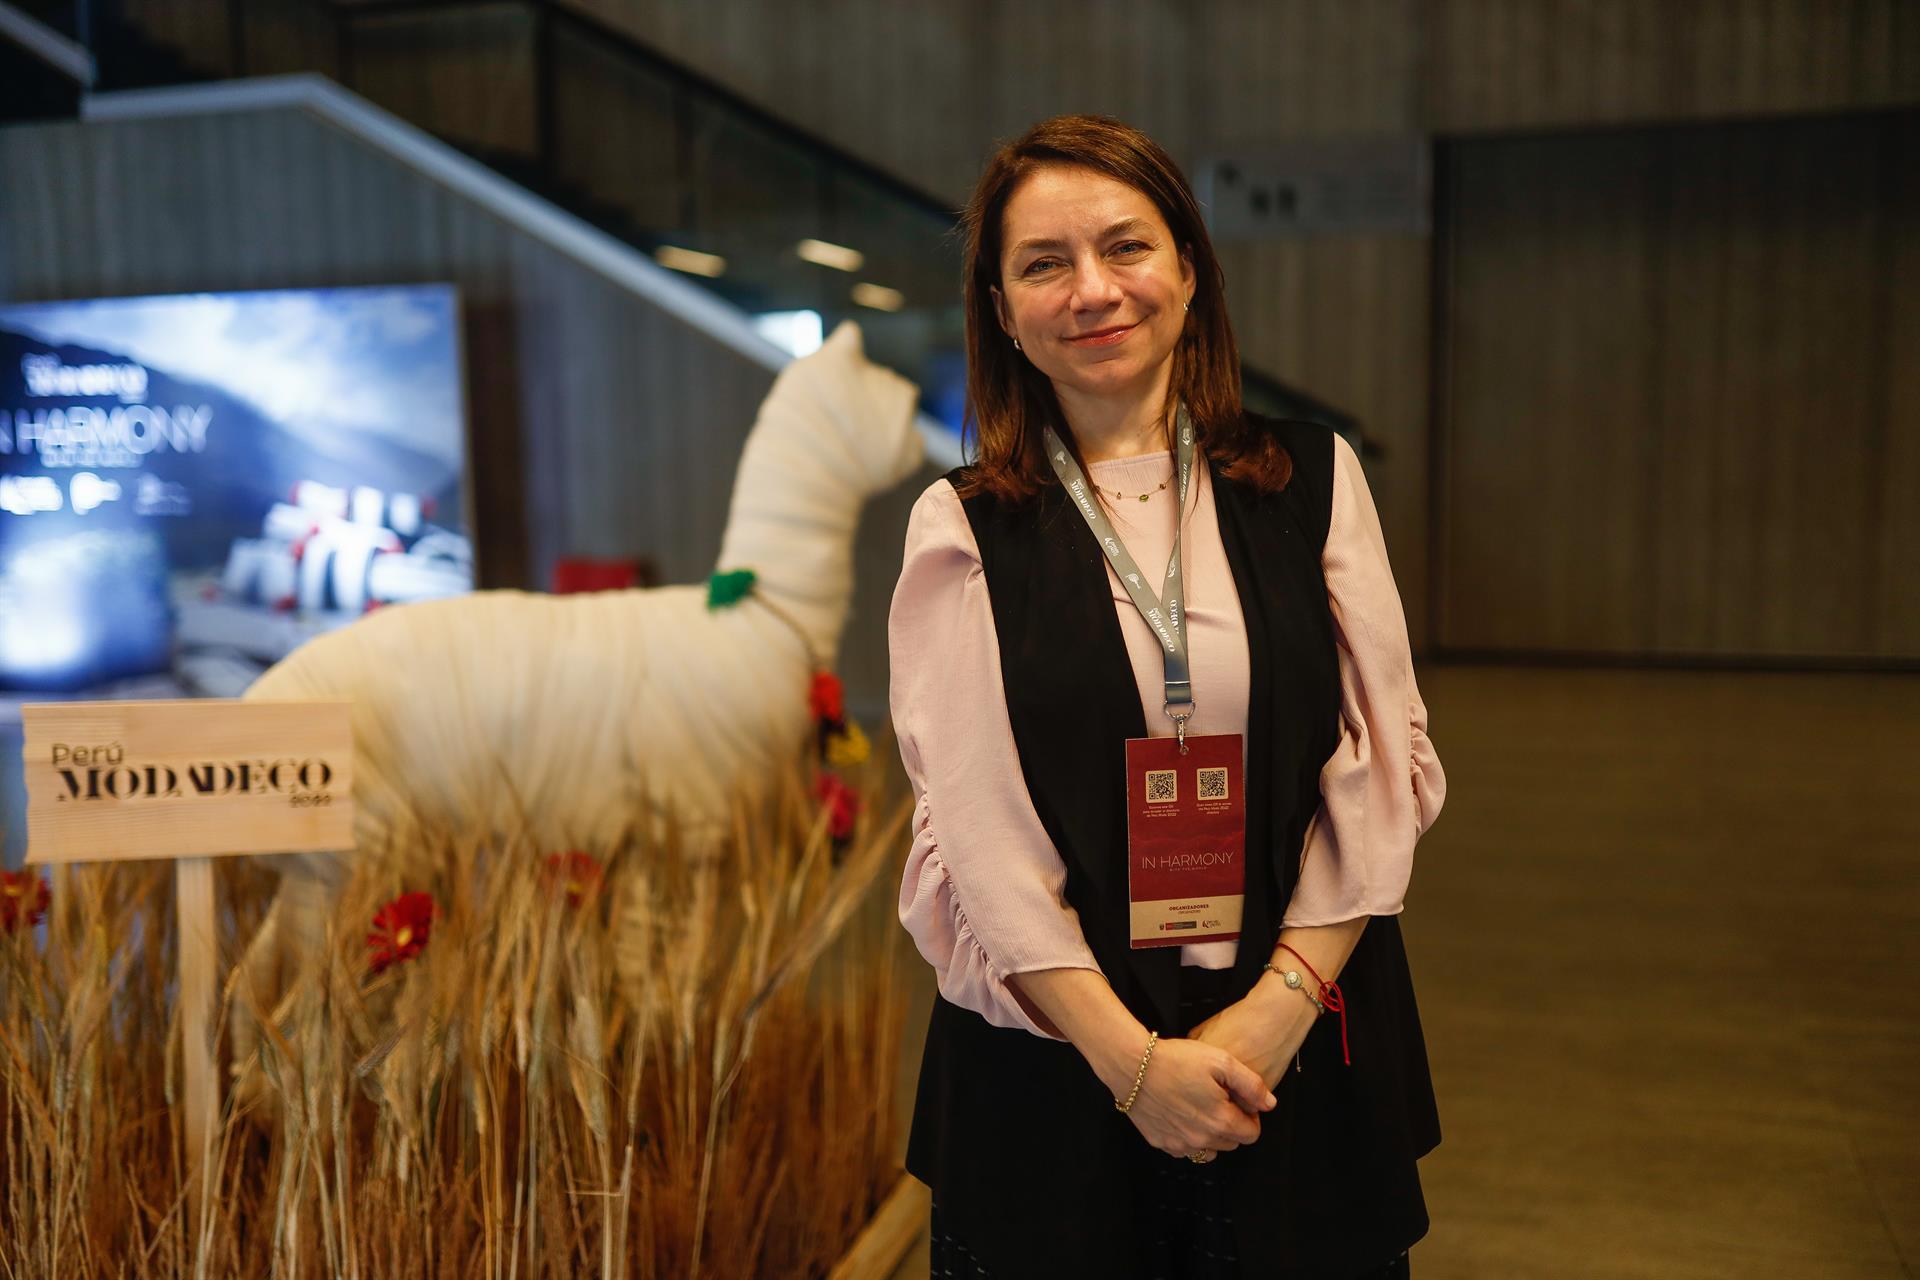 La lana de alpaca, una oportunidad en auge para la moda peruana